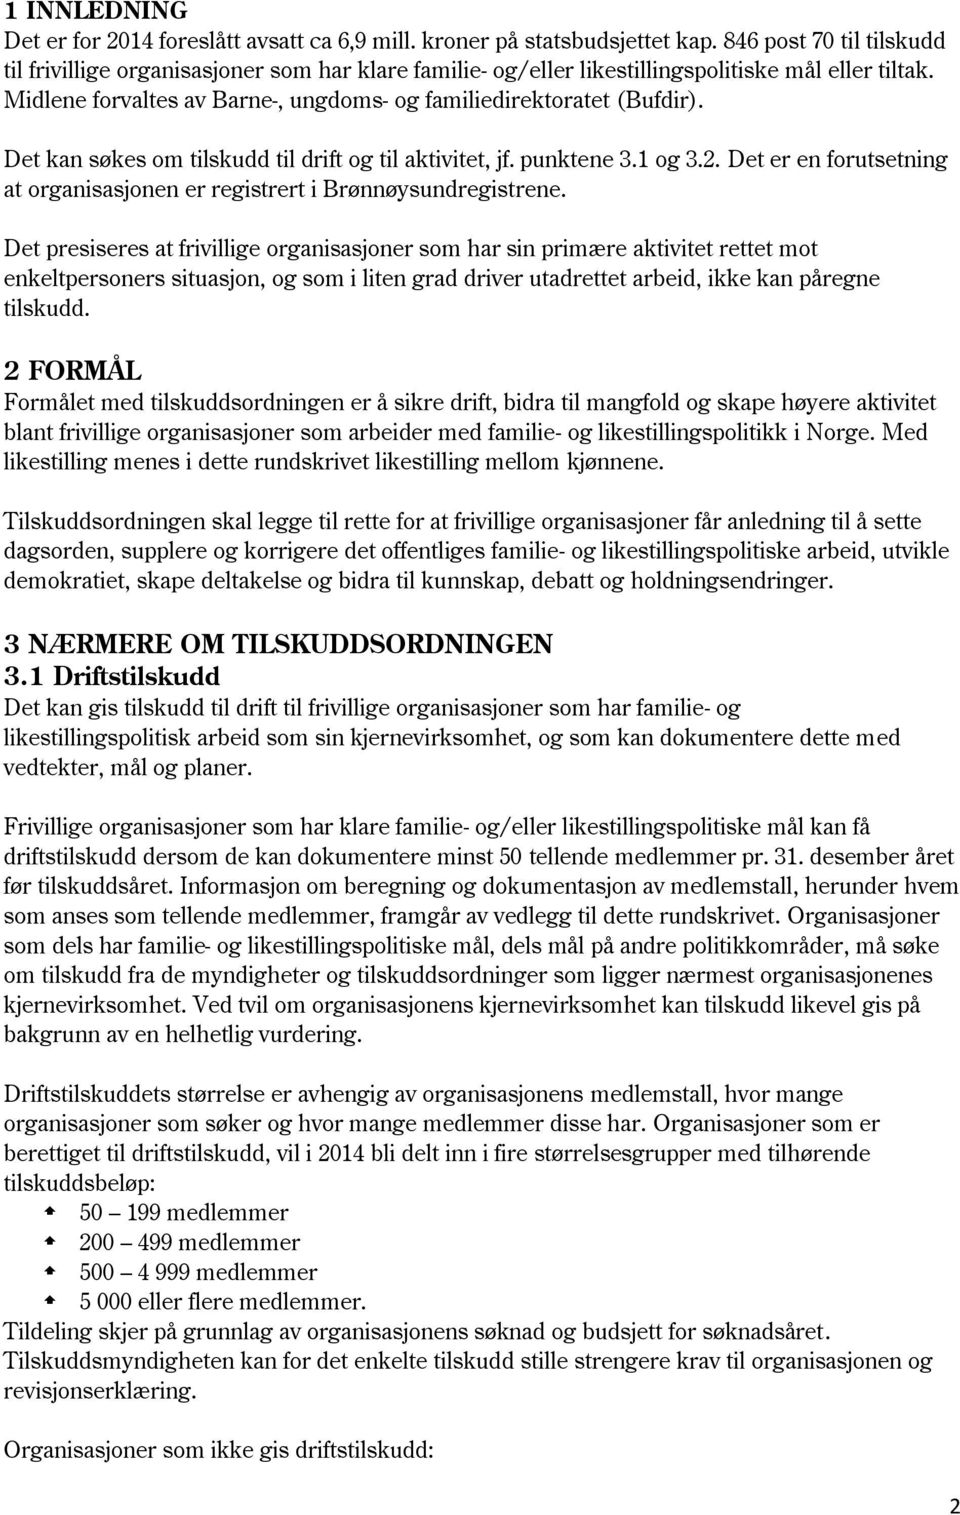 Det kan søkes om tilskudd til drift og til aktivitet, jf. punktene 3.1 og 3.2. Det er en forutsetning at organisasjonen er registrert i Brønnøysundregistrene.